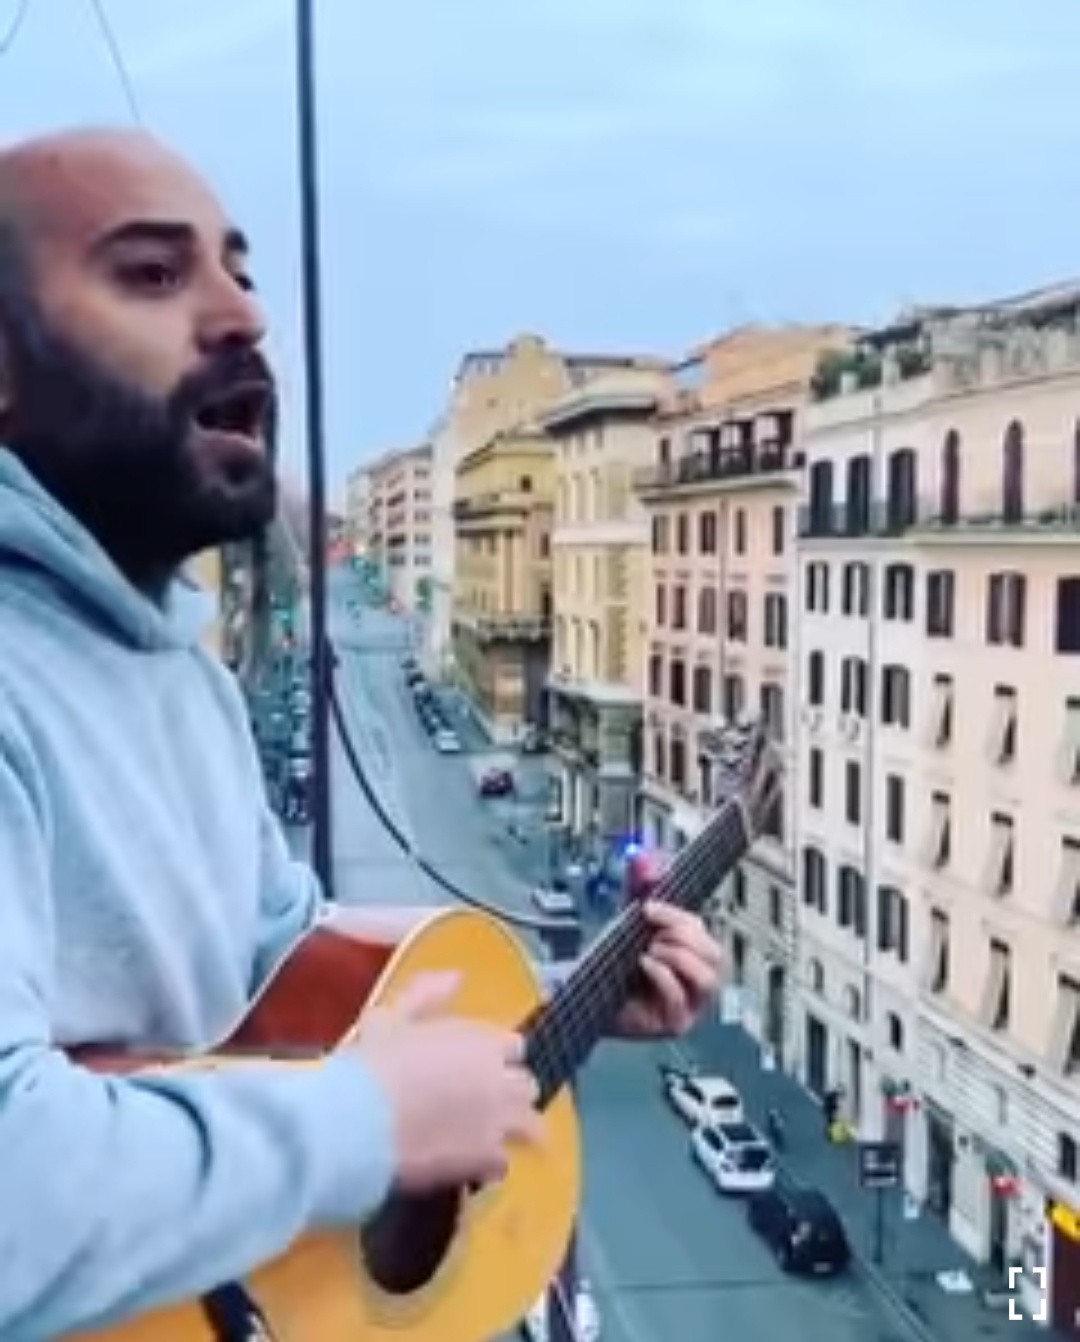 Flash mob, Giuliano Sangiorgi al balcone canta “Meraviglioso” e tutta la via lo segue cantando